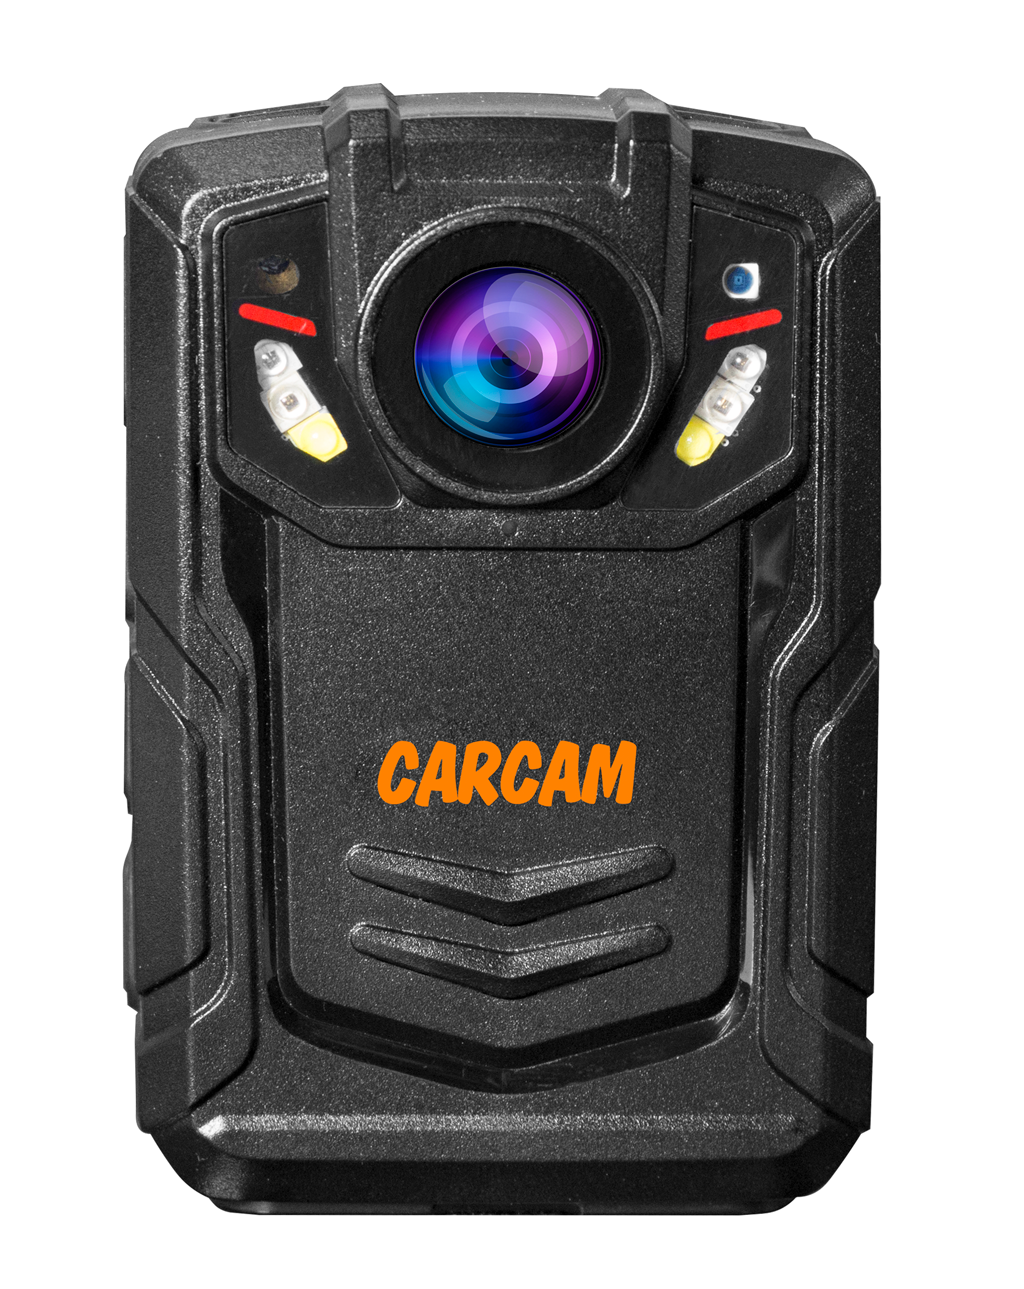 Персональный Quad HD видеорегистратор  CARCAM COMBAT 2S/4G 32GB персональный quad hd видеорегистратор carcam combat 2s 4g 128gb